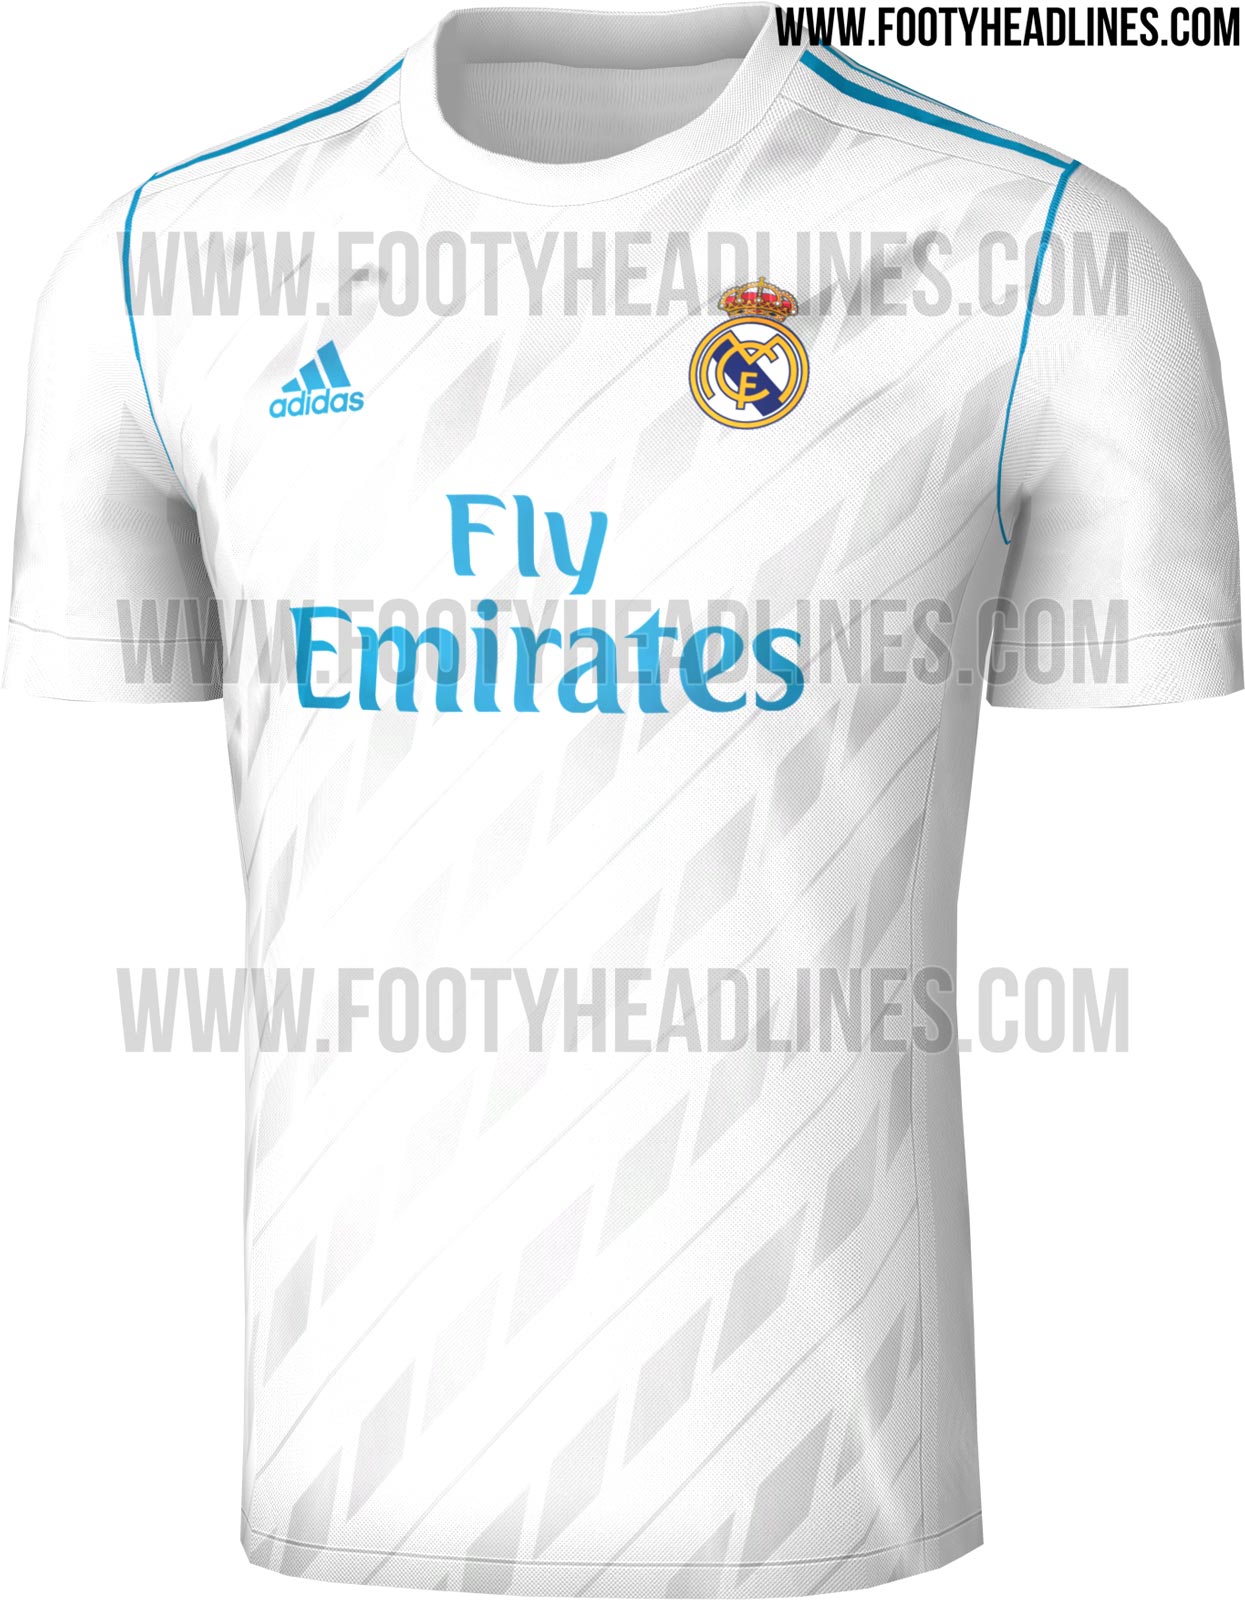 Rò rỉ mẫu áo đấu của Real Madrid mùa 2017/2018